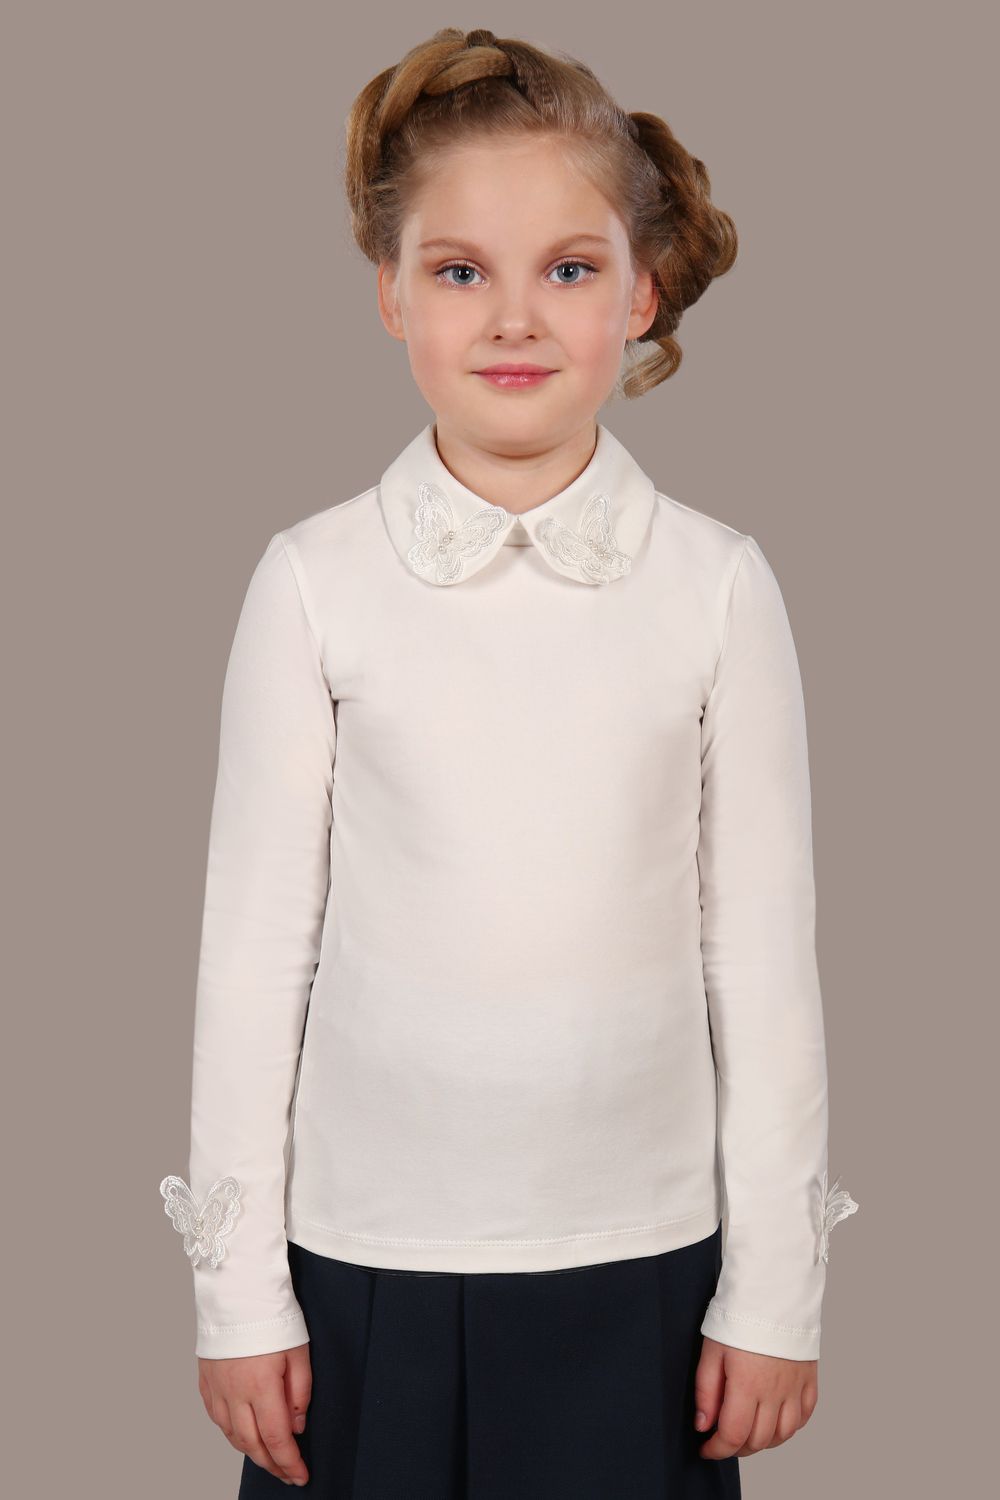 Блузка для девочки Камилла арт. 13173 - крем